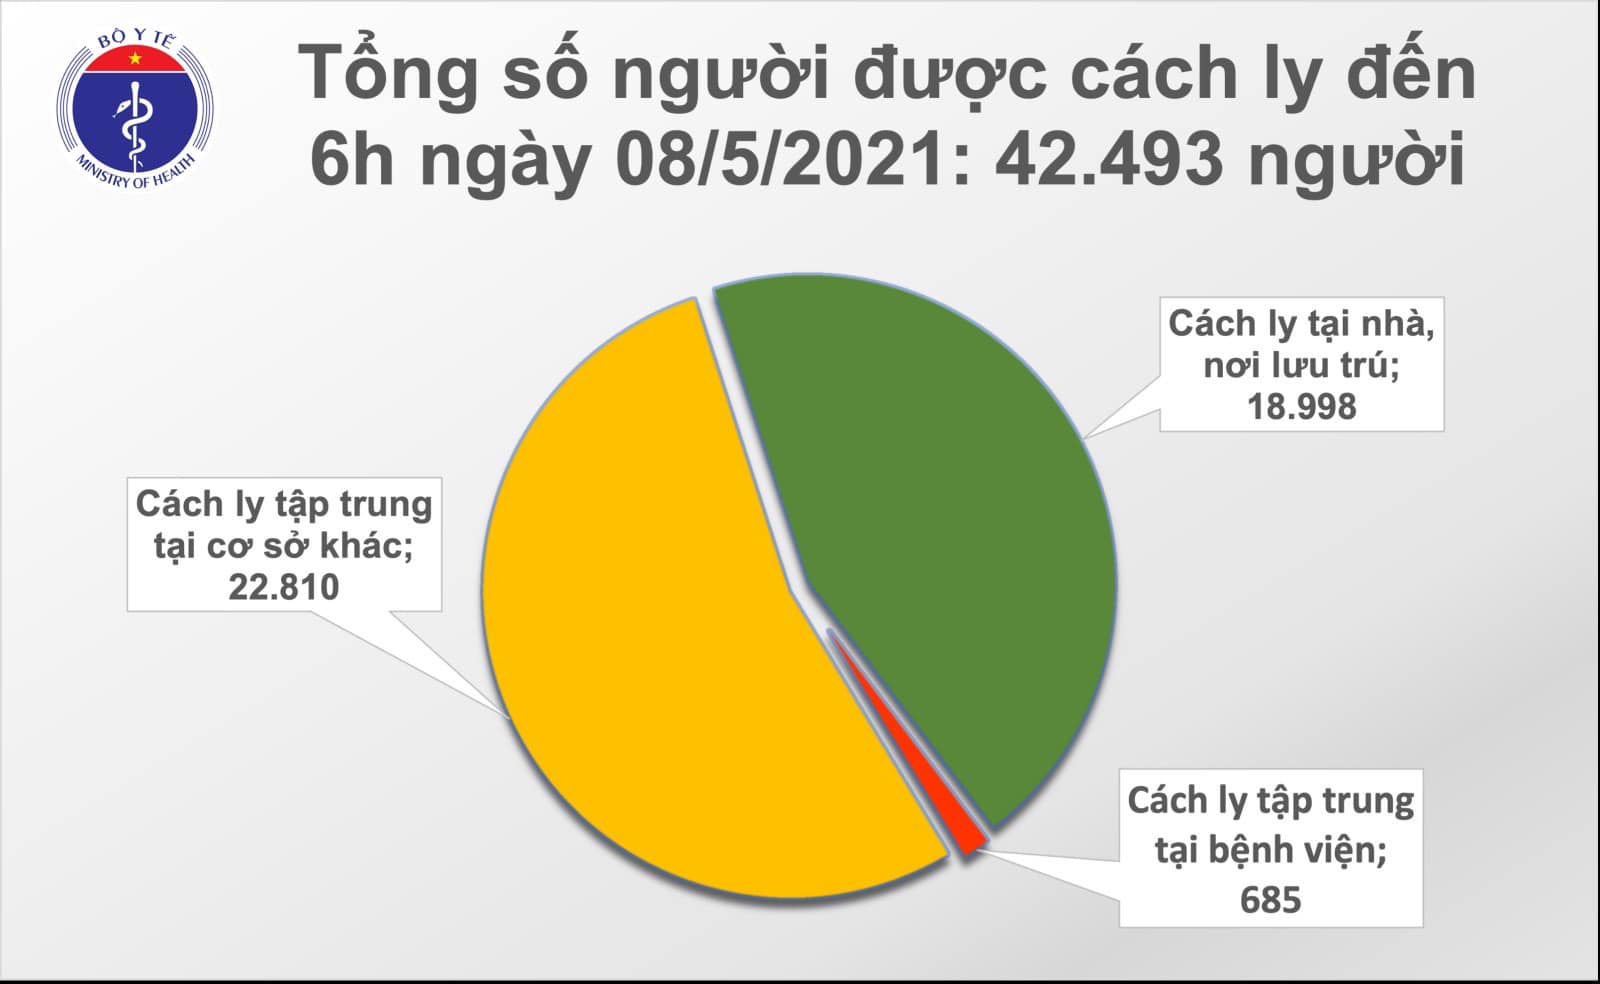 Sáng 8/5 có 15 ca Covid-19 lây nhiễm trong nước tại Bắc Ninh và Hà Nội - Ảnh 3.